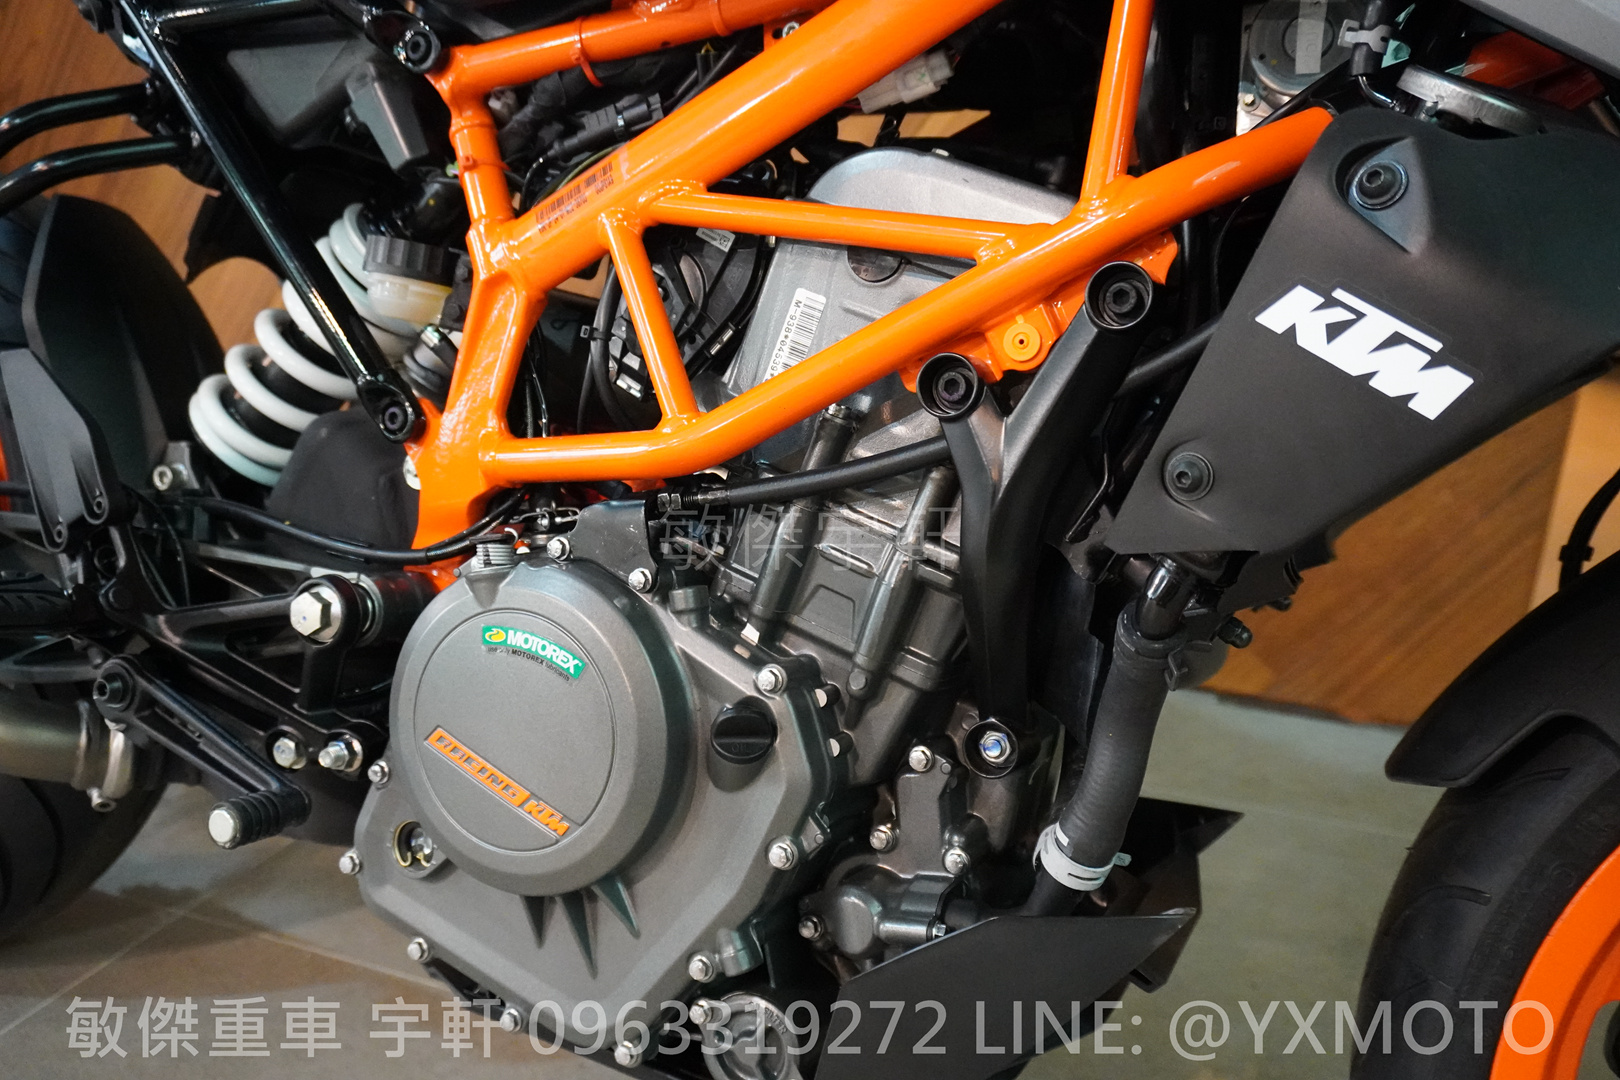 KTM 390DUKE新車出售中 【敏傑宇軒】2022 KTM 390 DUKE 灰橘 總代理公司車 | 重車銷售職人-宇軒 (敏傑)